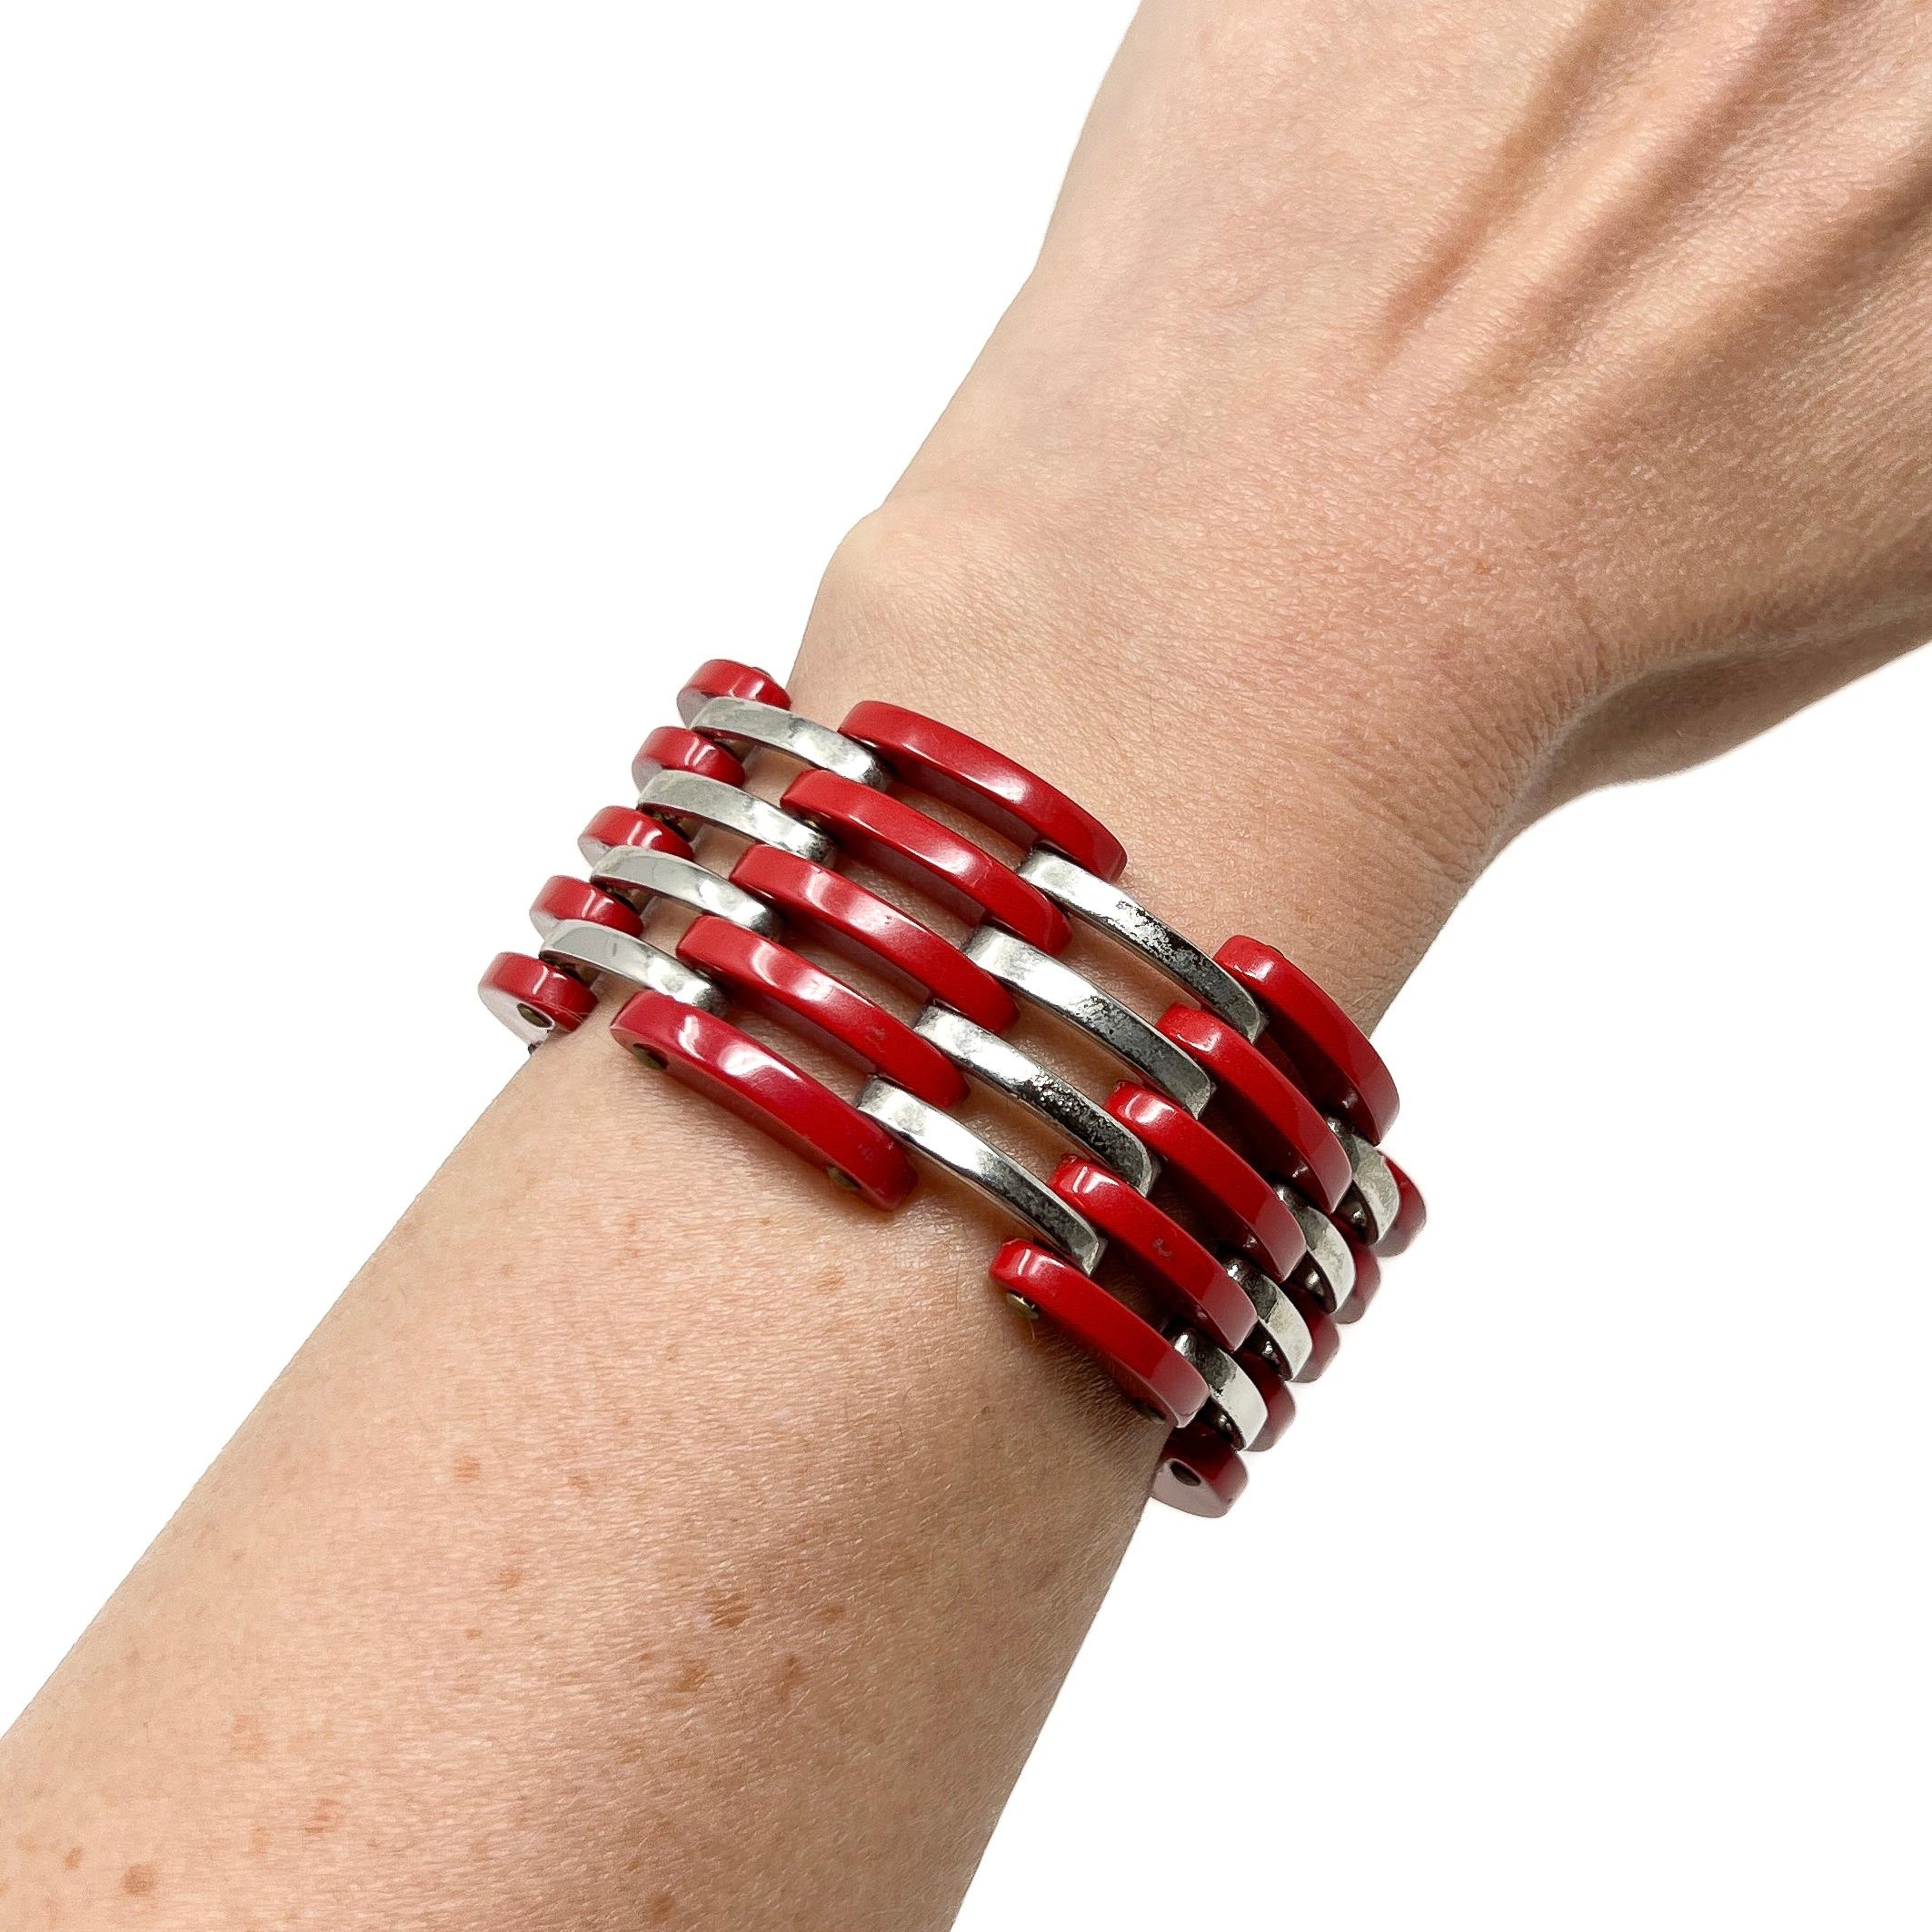 Ce bracelet élégant date des années 1930 et a été créé par Jakob Bengel. 

Rapport de condition :
Excellent 

Les détails...
Ce bracelet est composé de métal chromé et de panneaux incurvés en galalithe rouge, reliés entre eux par des rivets. Le